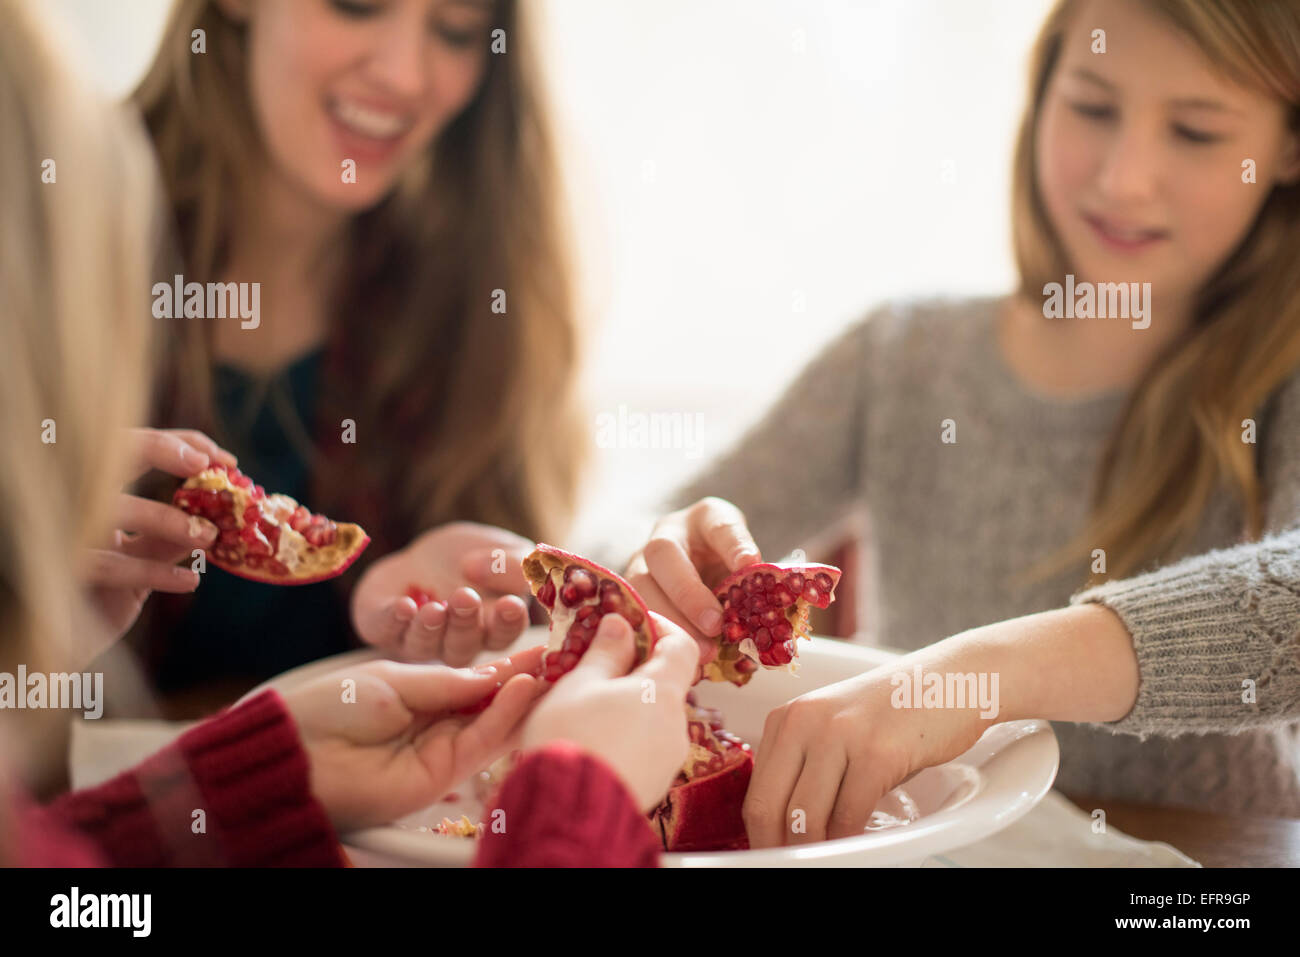 Zwei Mädchen und eine Frau sitzen an einem Tisch, Kommissionierung Kerne eines Granatapfels. Stockfoto